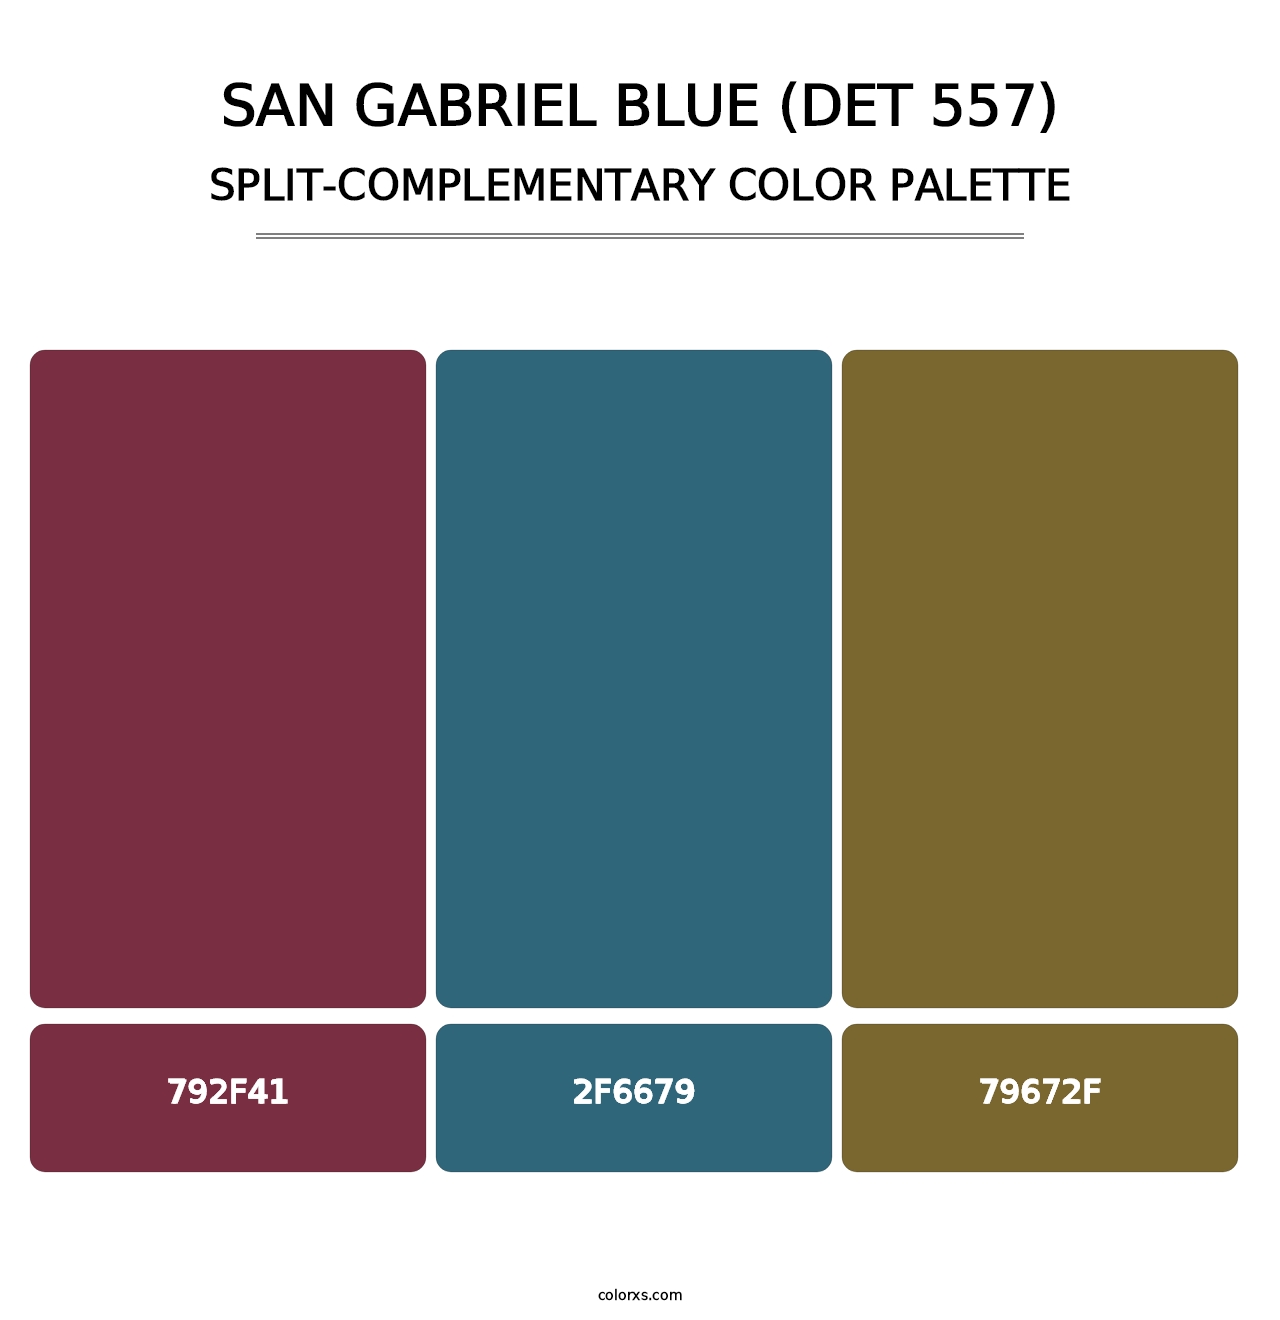 San Gabriel Blue (DET 557) - Split-Complementary Color Palette